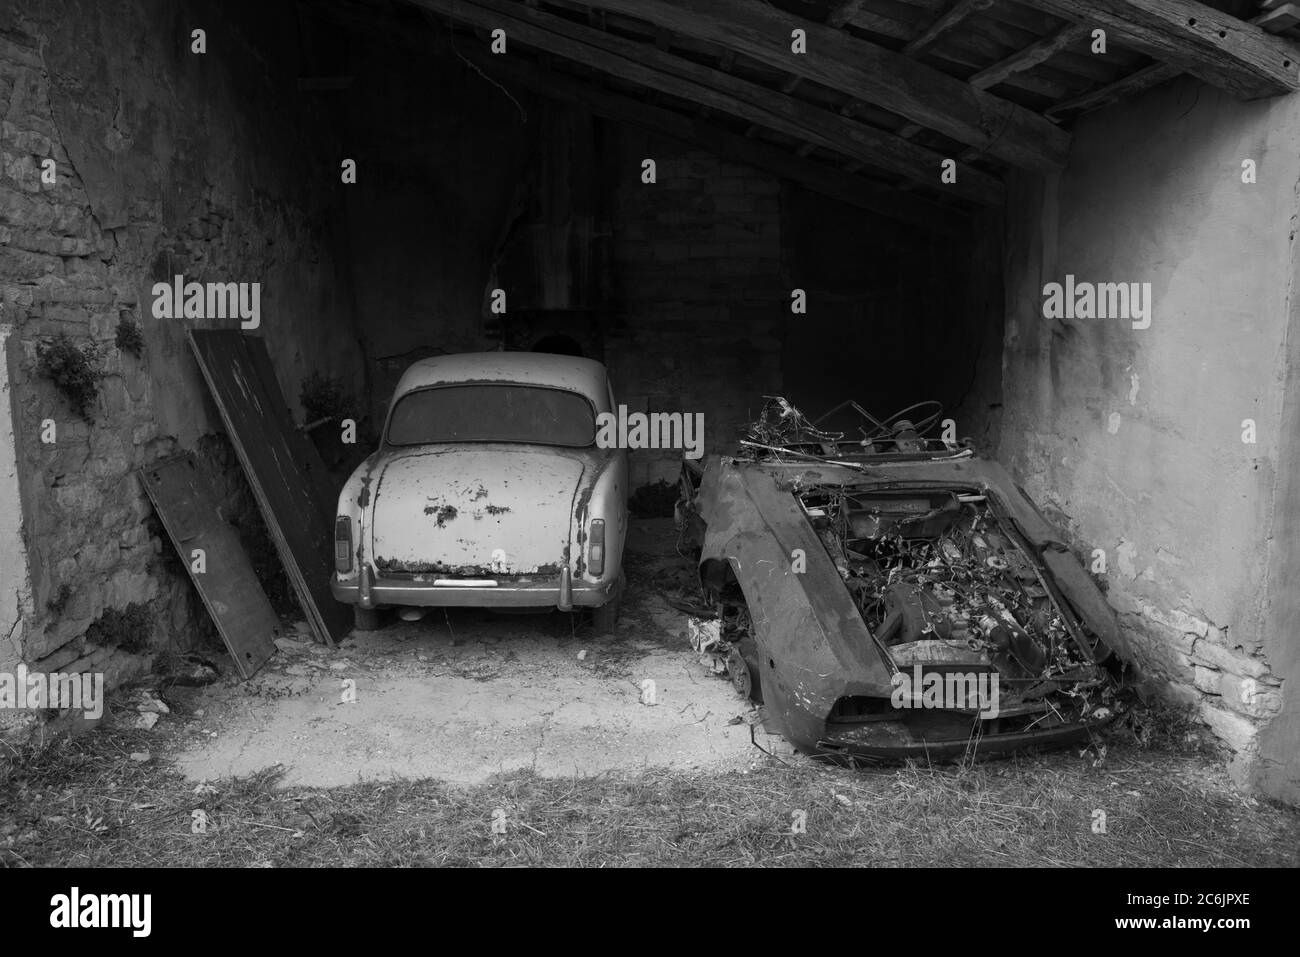 Les voitures abandonnées qui ont été laissées à la rouille au fil des années, noir et blanc, Italie Banque D'Images